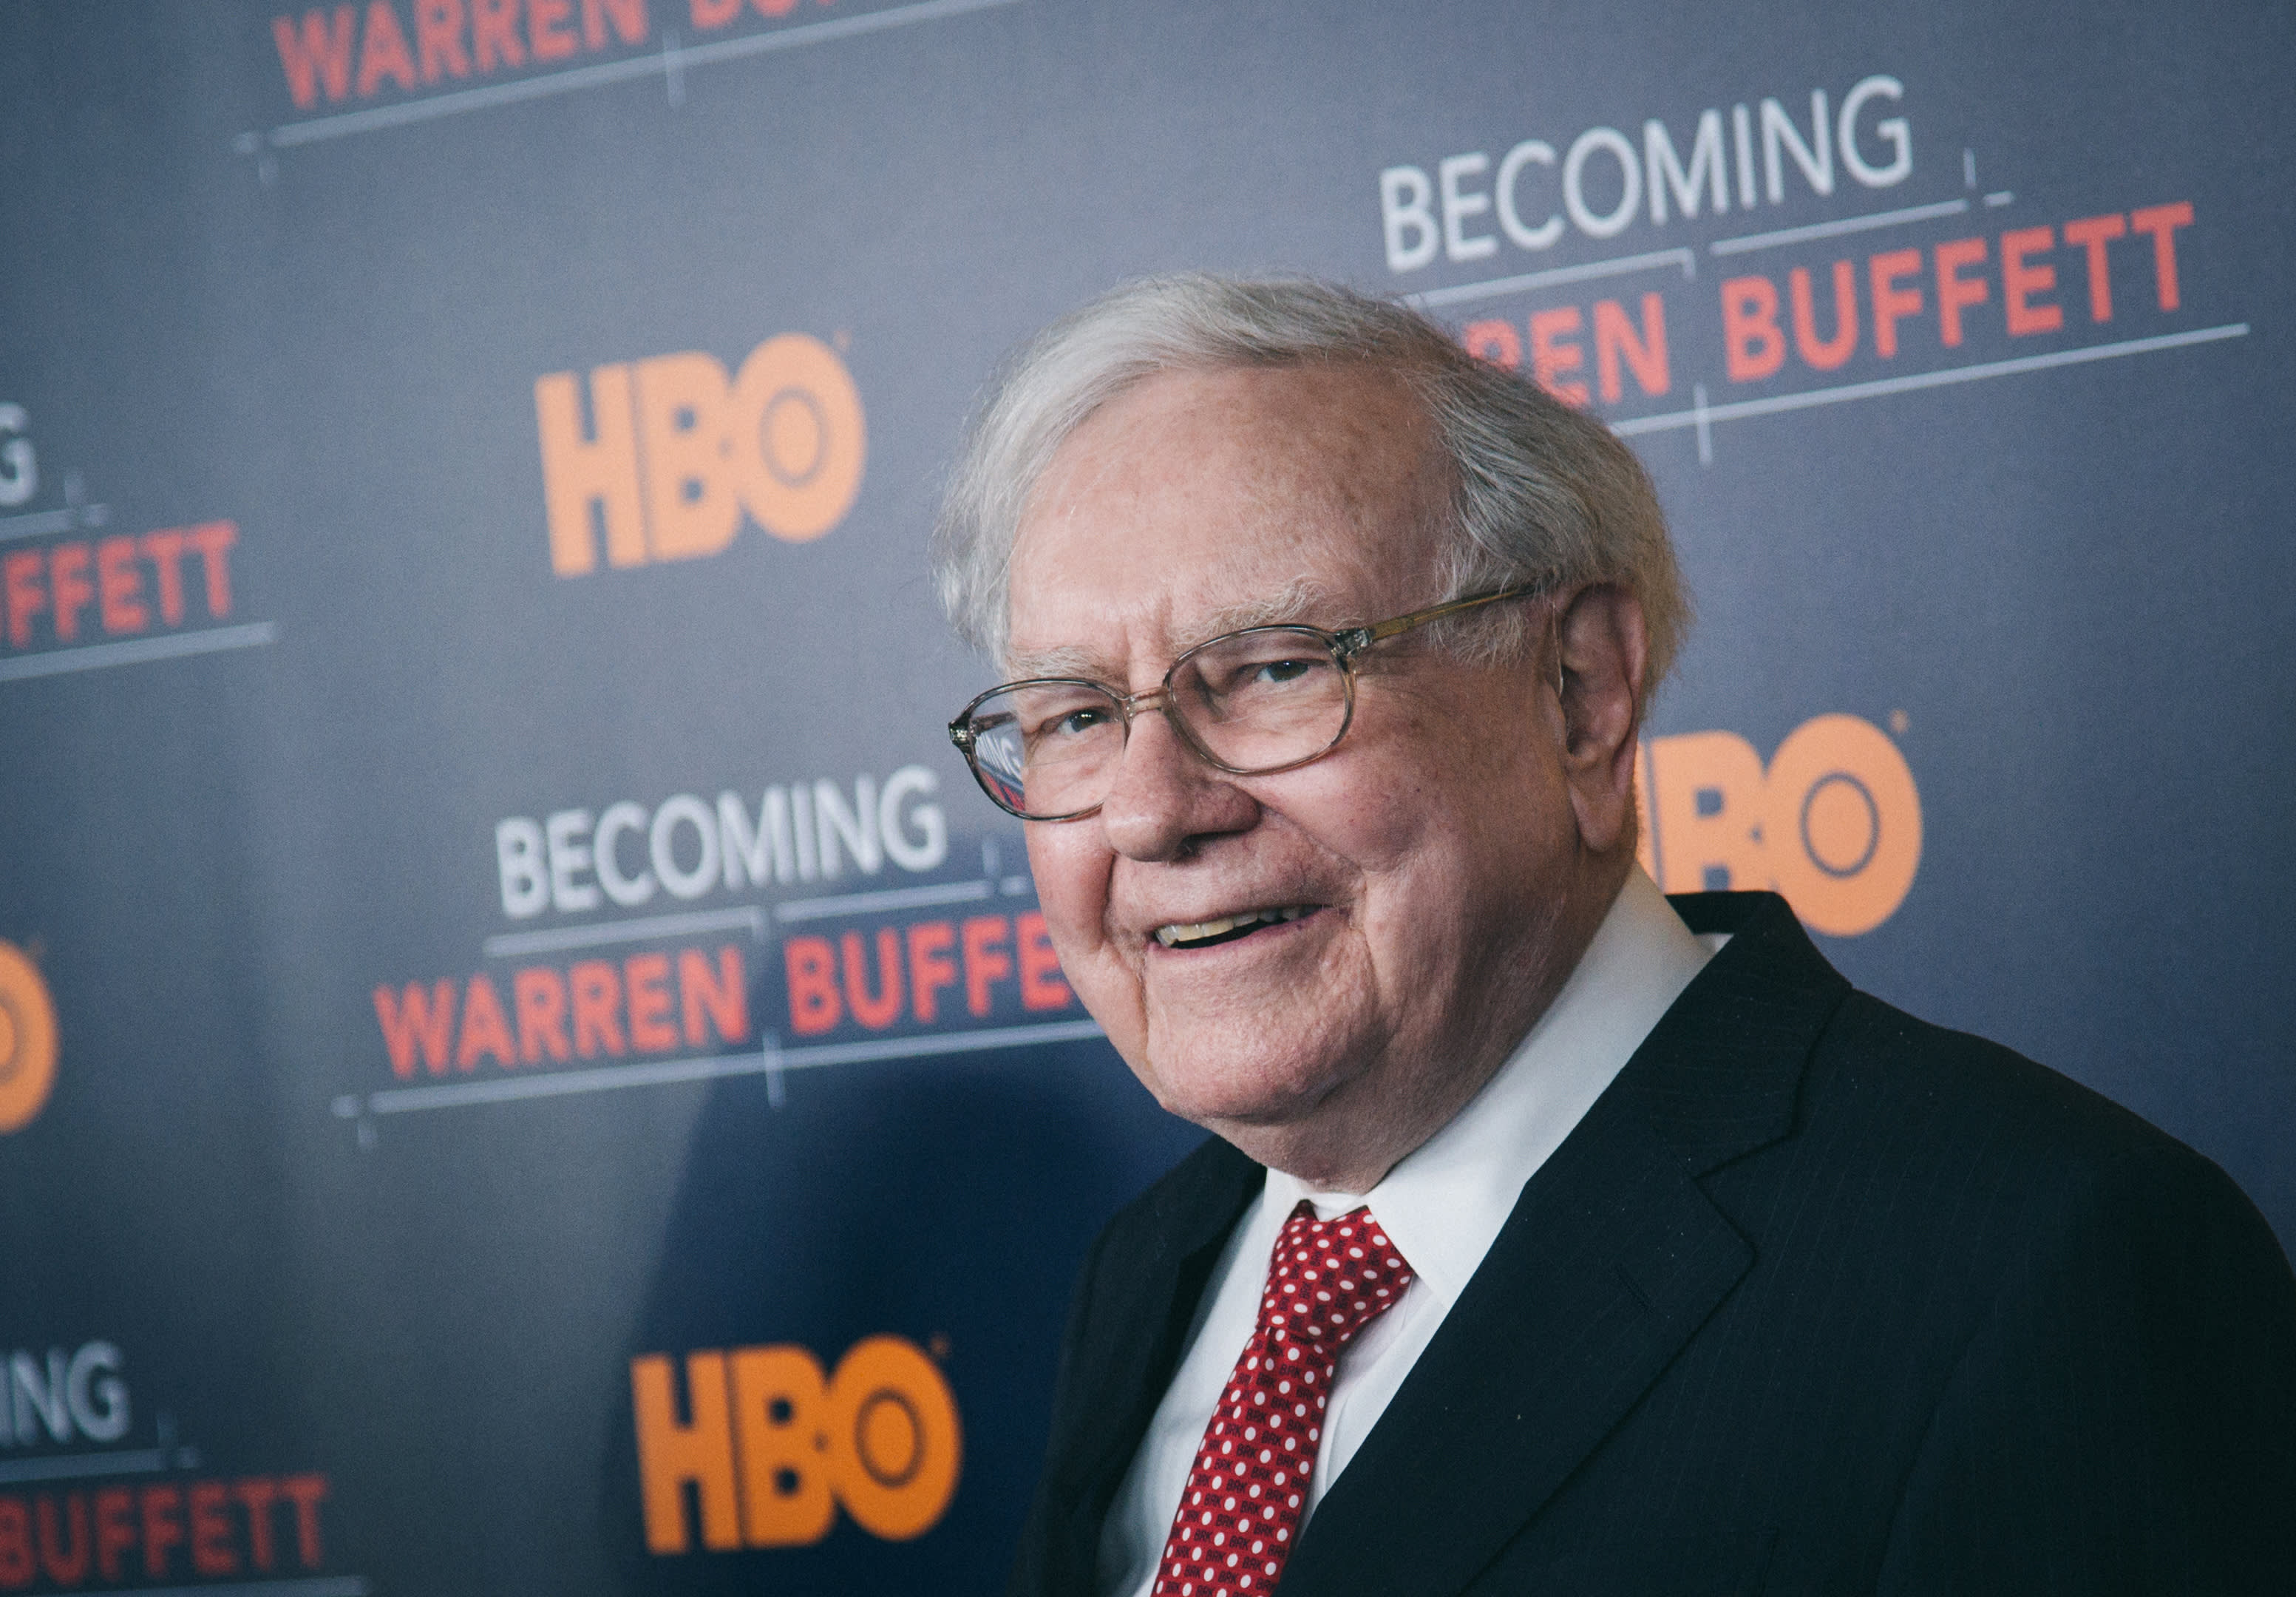 'Paranın Psikolojisi' yazarı, Warren Buffett'in bu kadar başarılı olmasının nedeni işte bu.